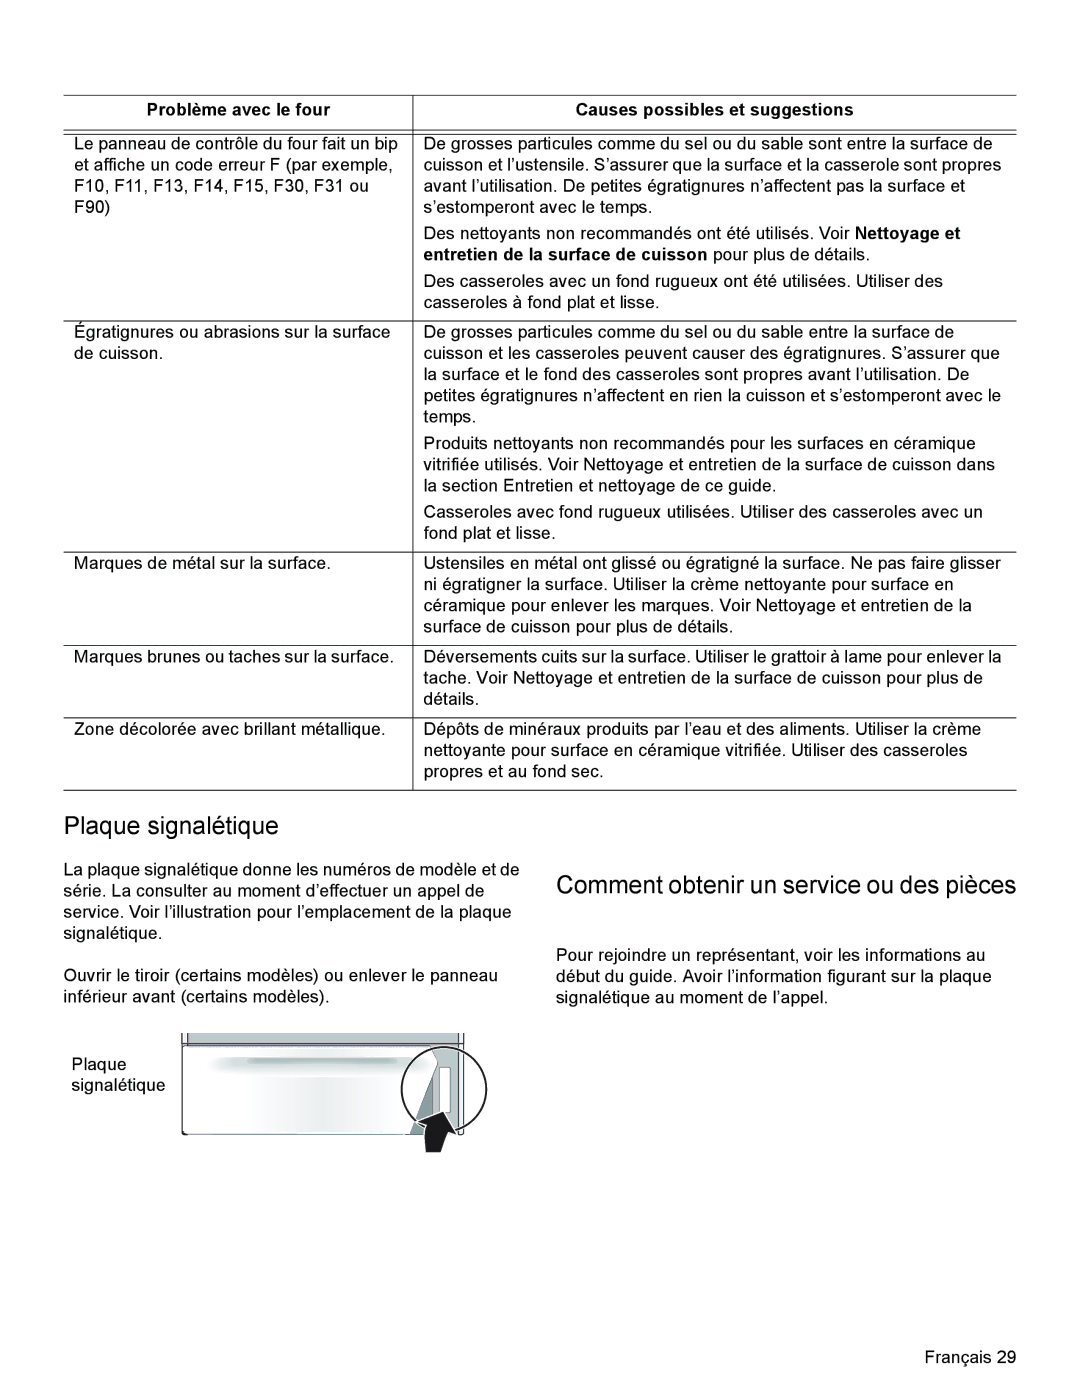 Bosch Appliances HES3023U manual Plaque signalétique, Comment obtenir un service ou des pièces 